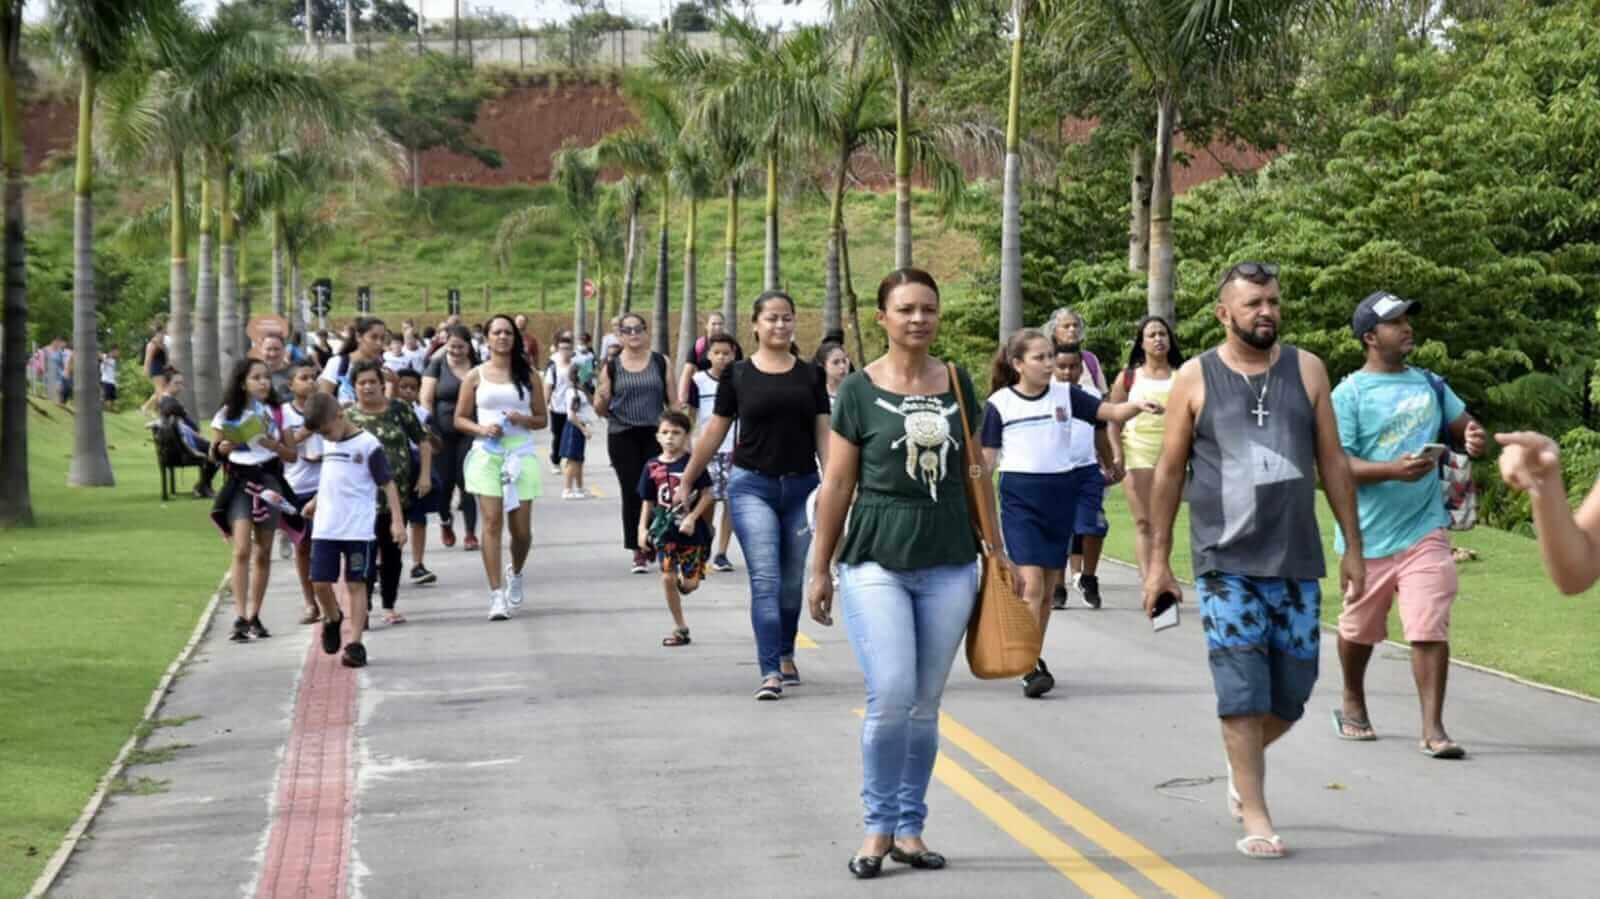 Paróquia N. S da Penha promove Caminhada das Famílias e das Águas no interior de Cachoeiro 